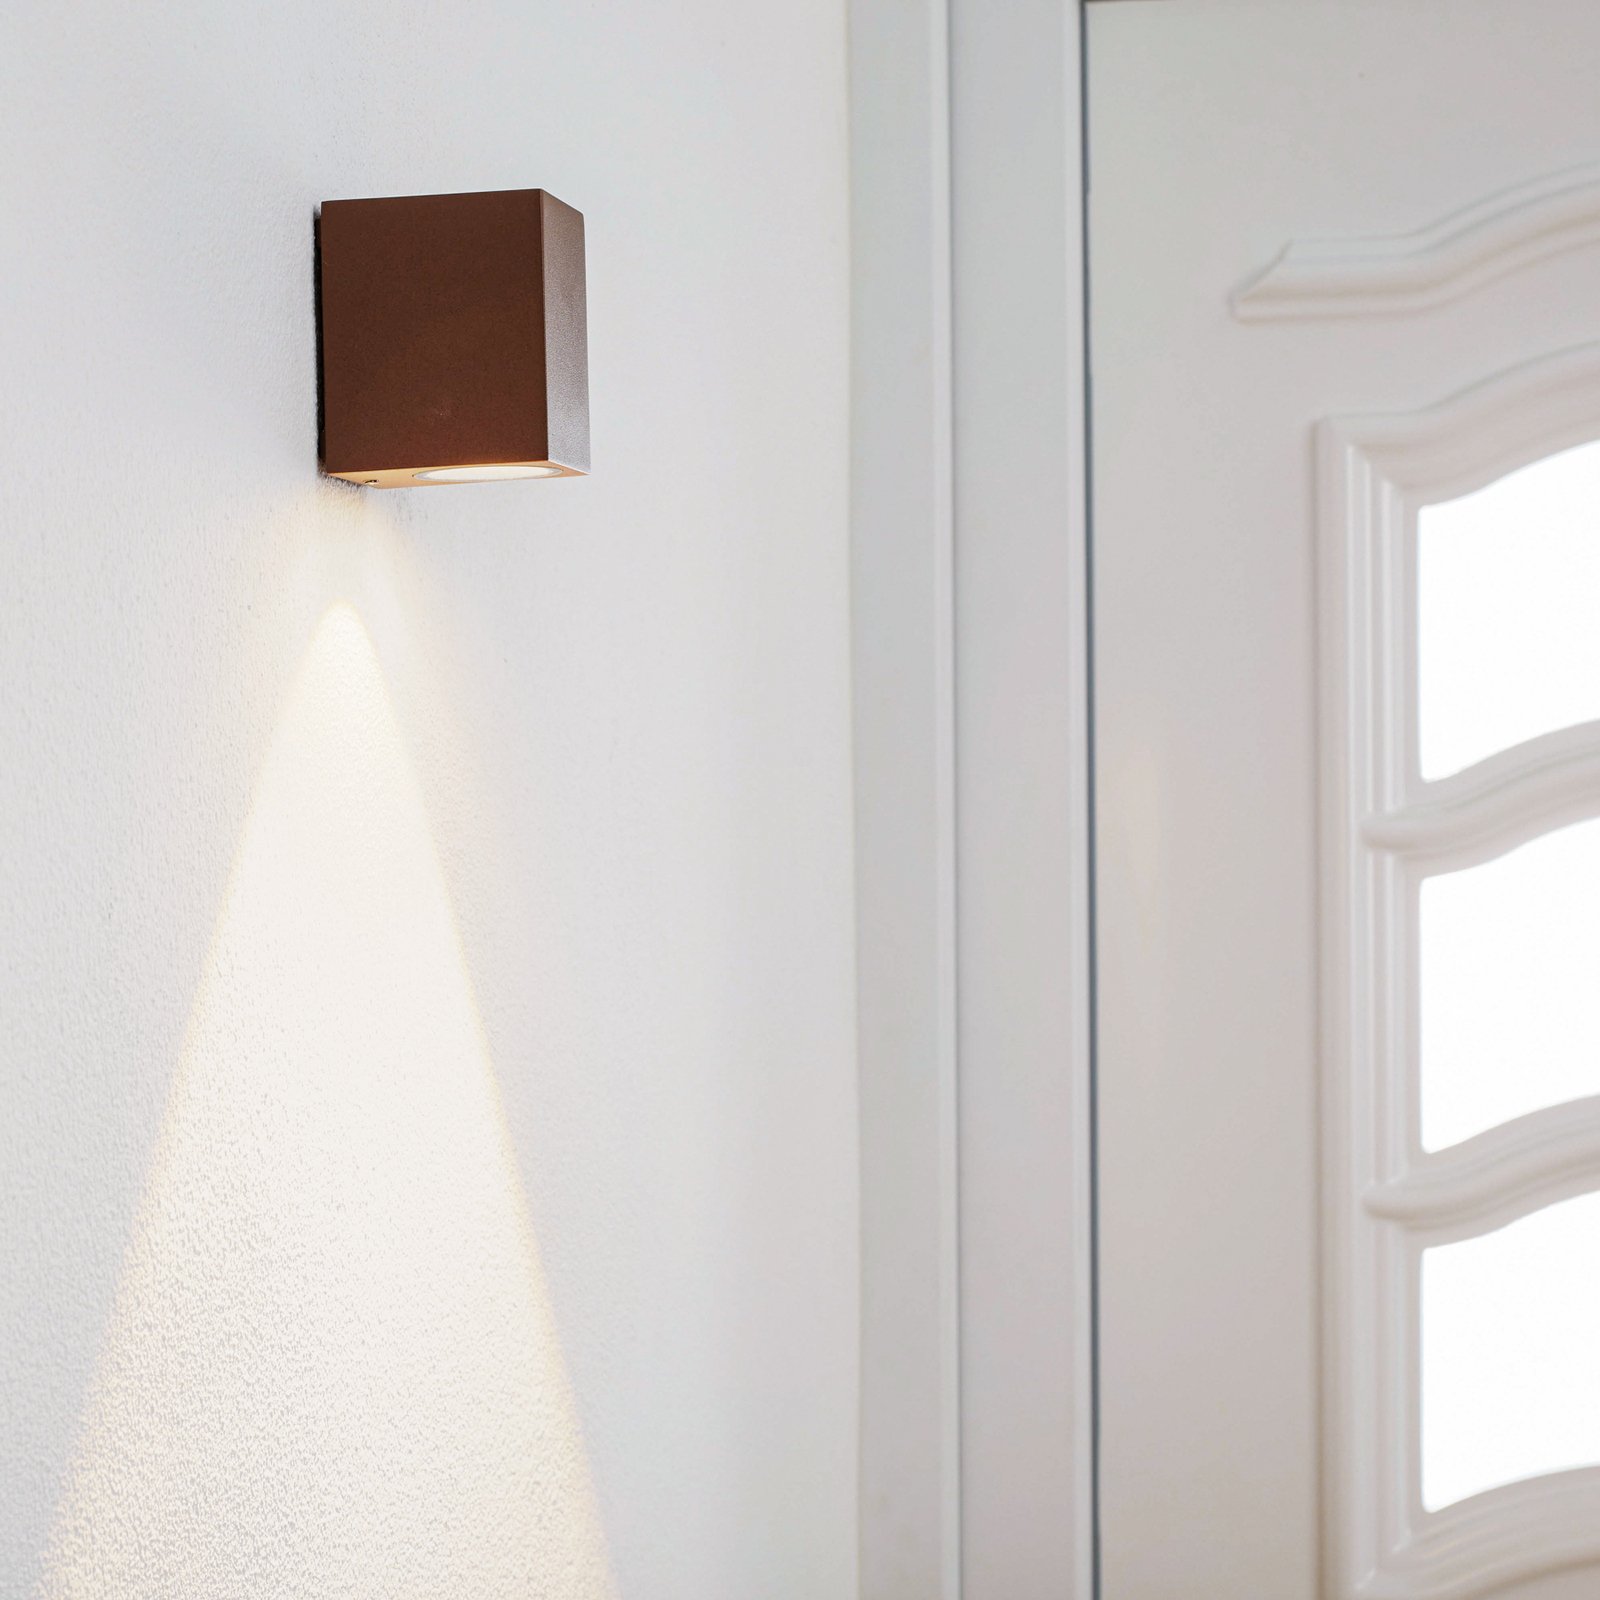 Rdzawobrązowa lampa ścienna zewnętrzna LED Tavi